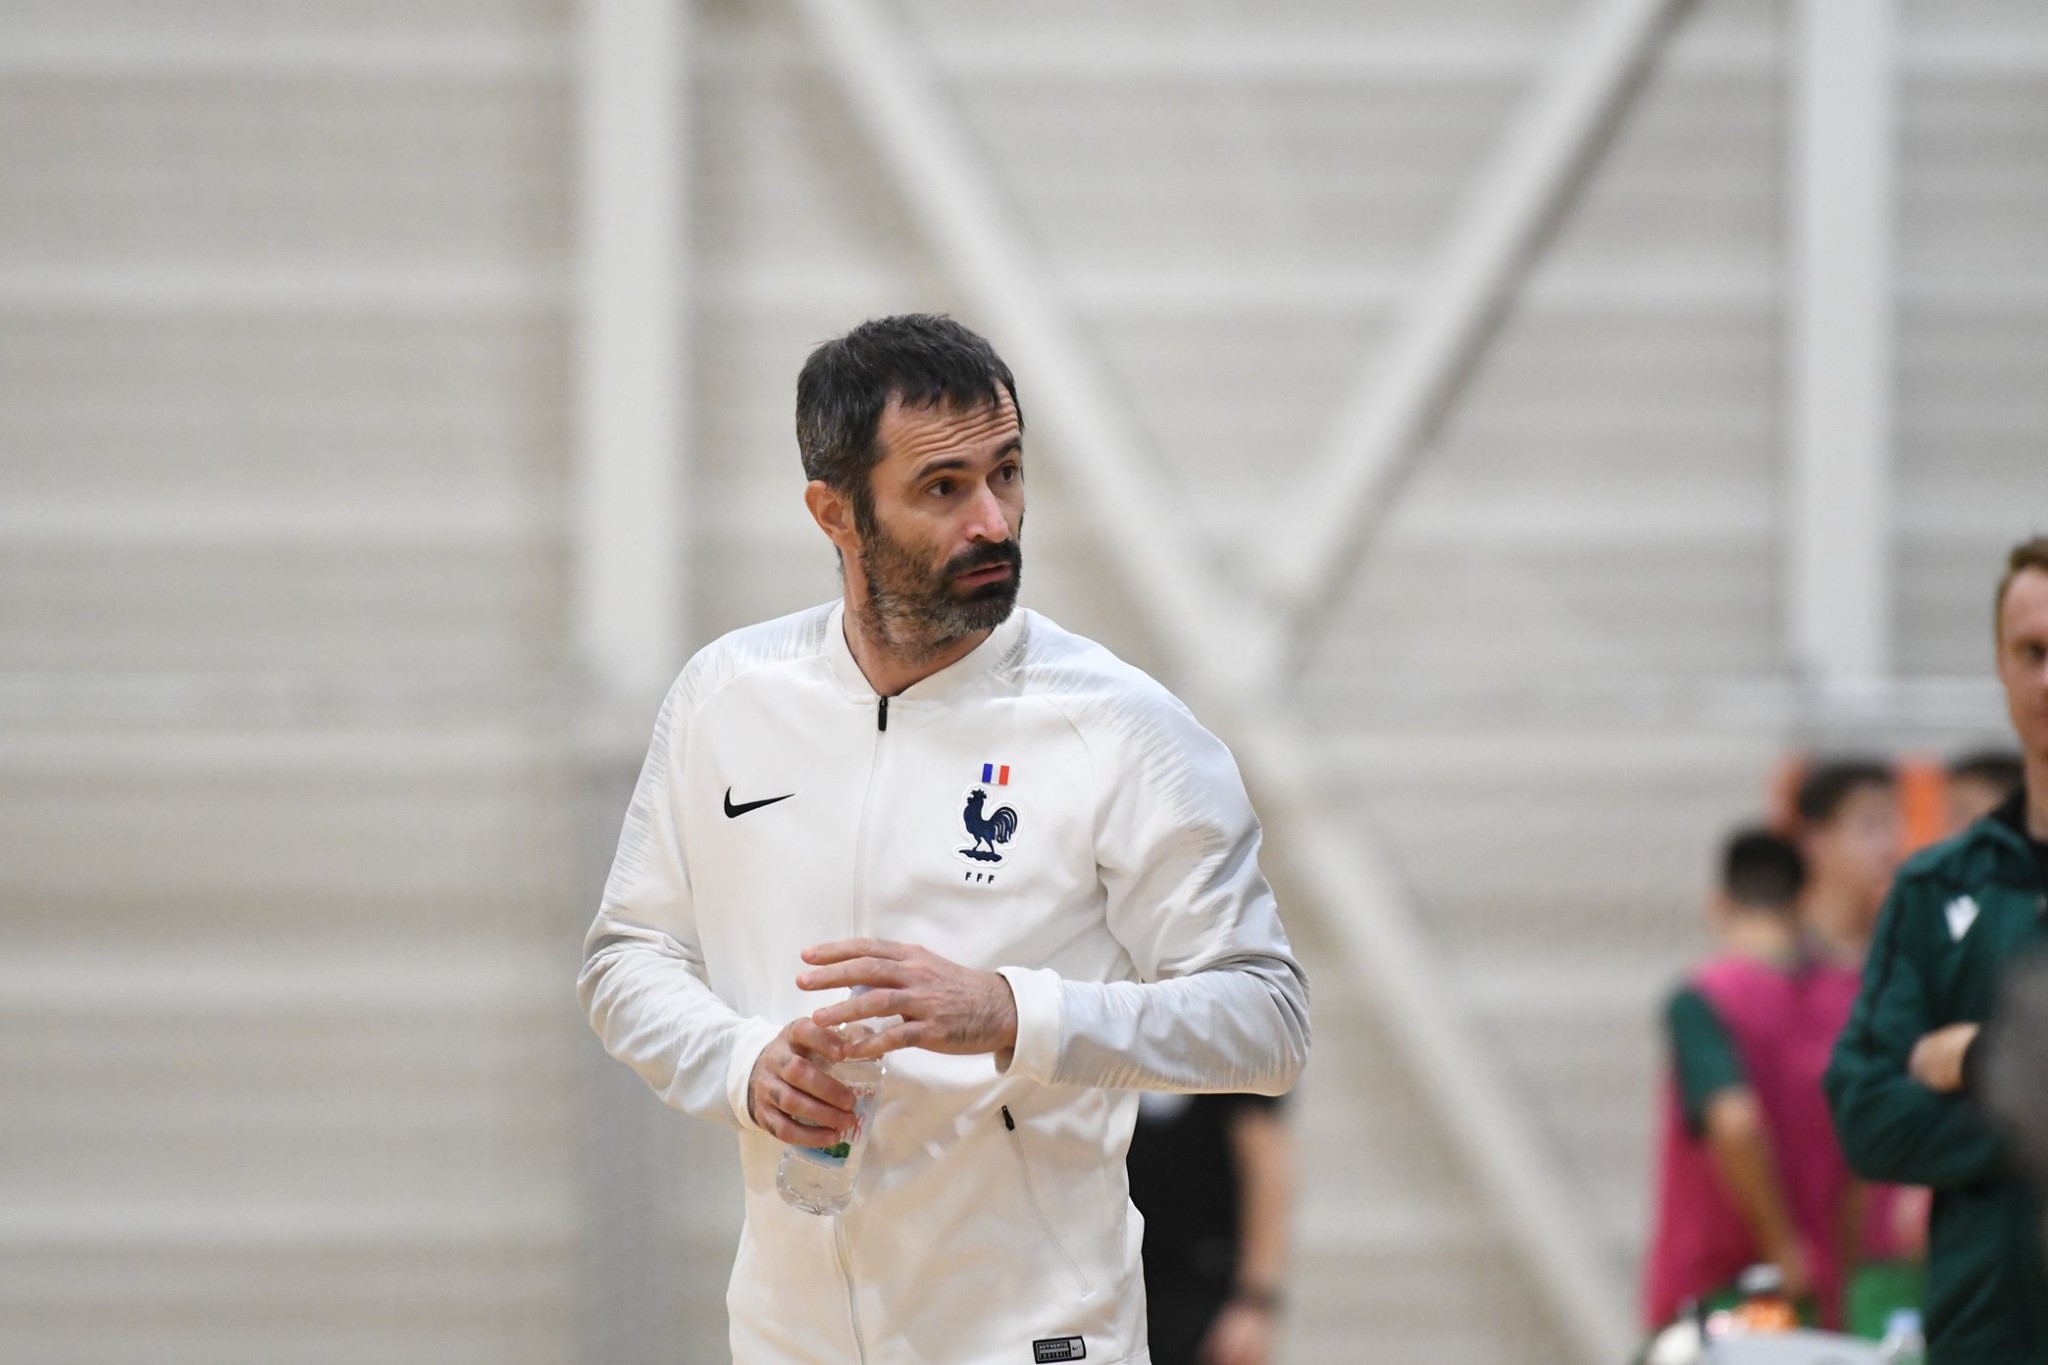 Raphaël Reynaud France Futsal coach